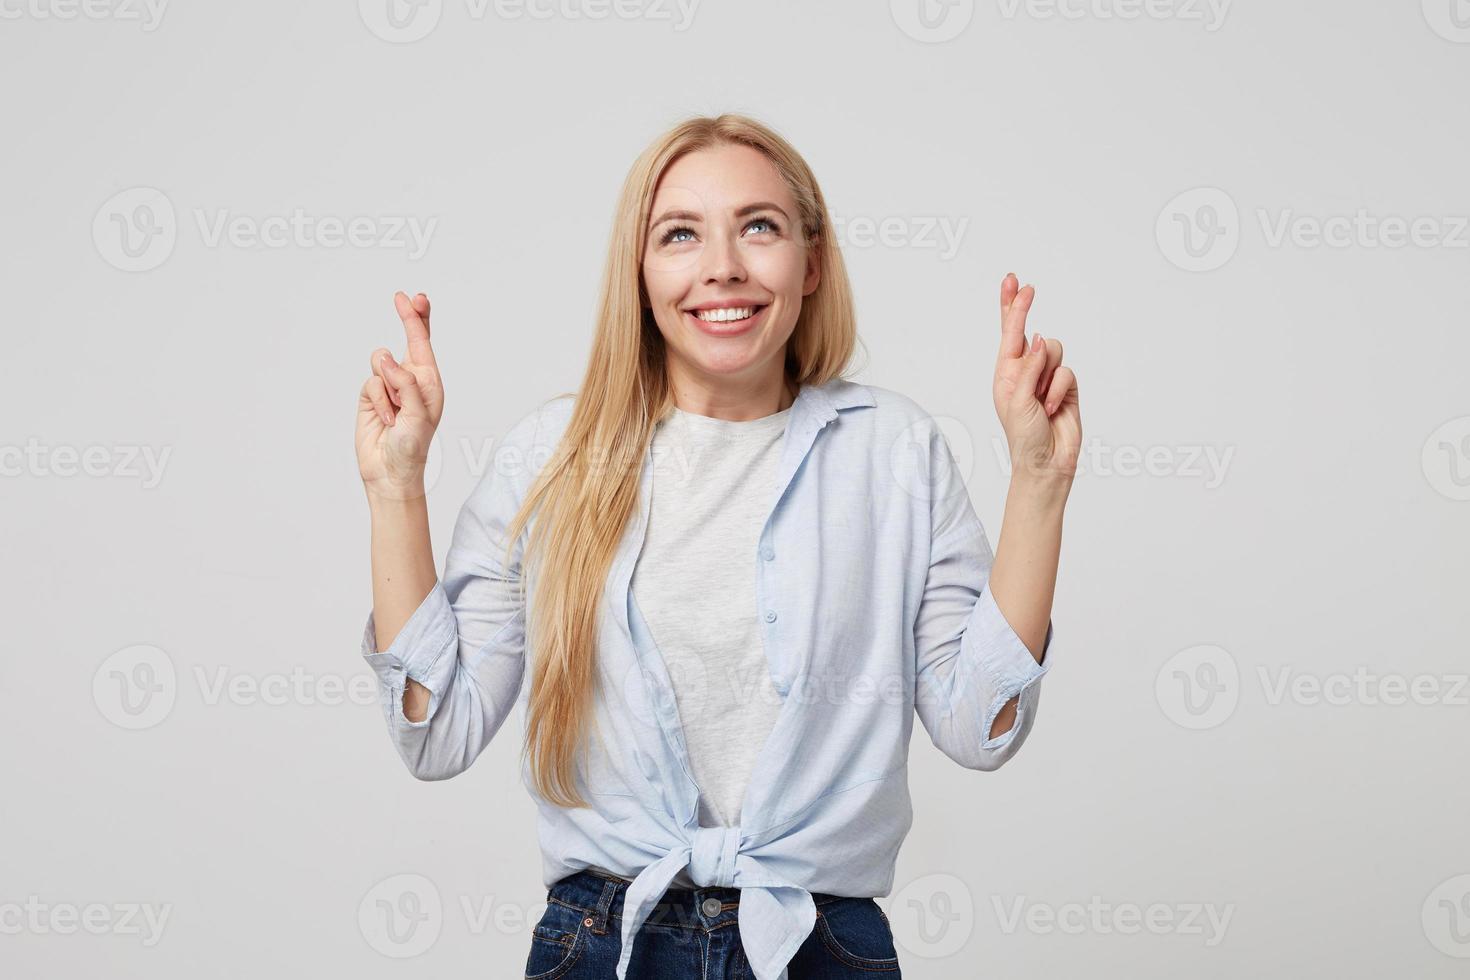 inomhusbild av en leende ung flicka med långt blont hår klädd i blå skjorta och jeans, som står över vit bakgrund, håller tummarna för lycka och tittar uppåt foto